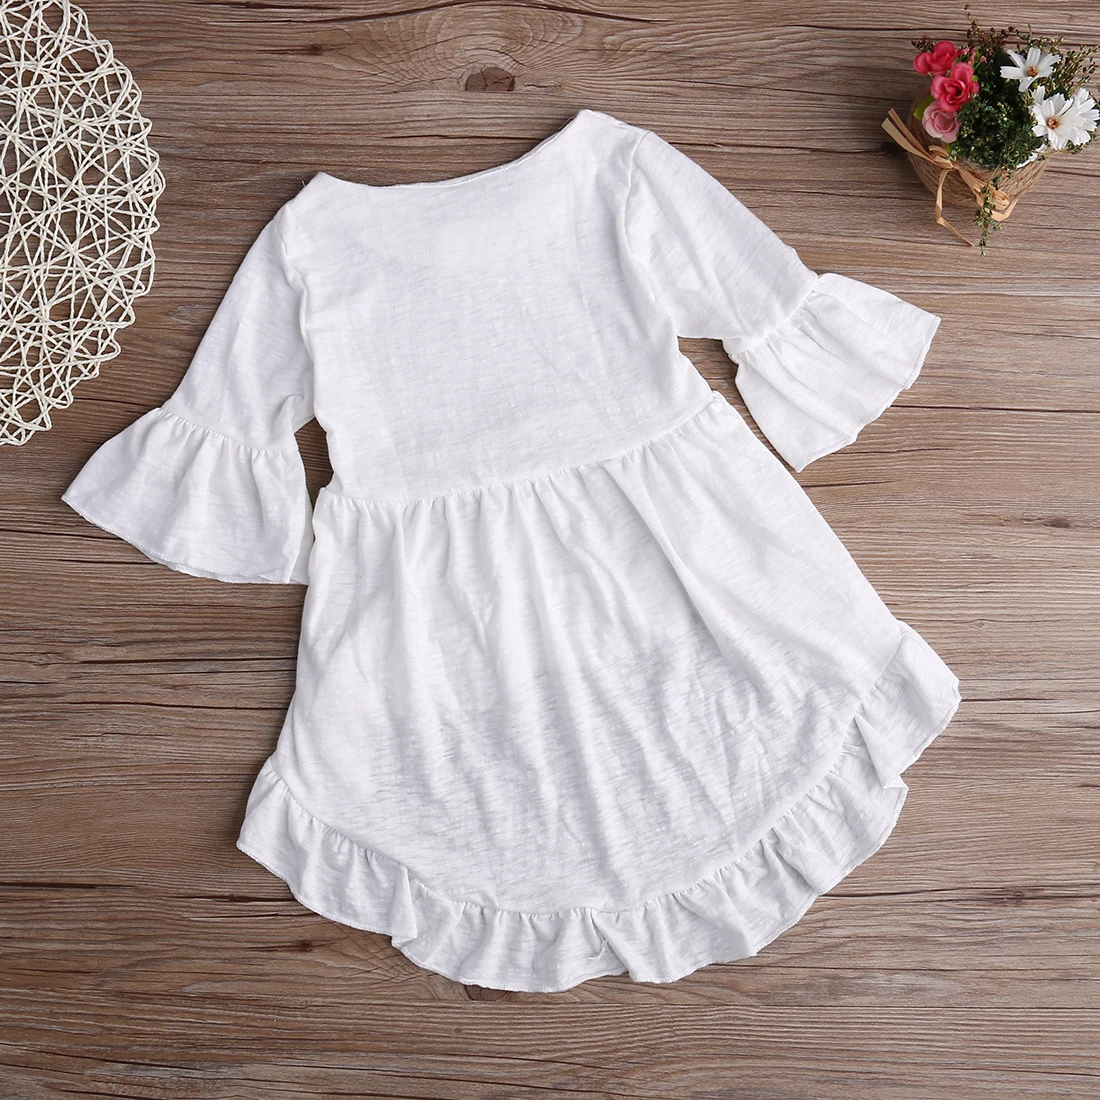 1 шт. новая летняя блузка для девочек симпатичня элегантная одежда для принцесс топ рубашка одежда